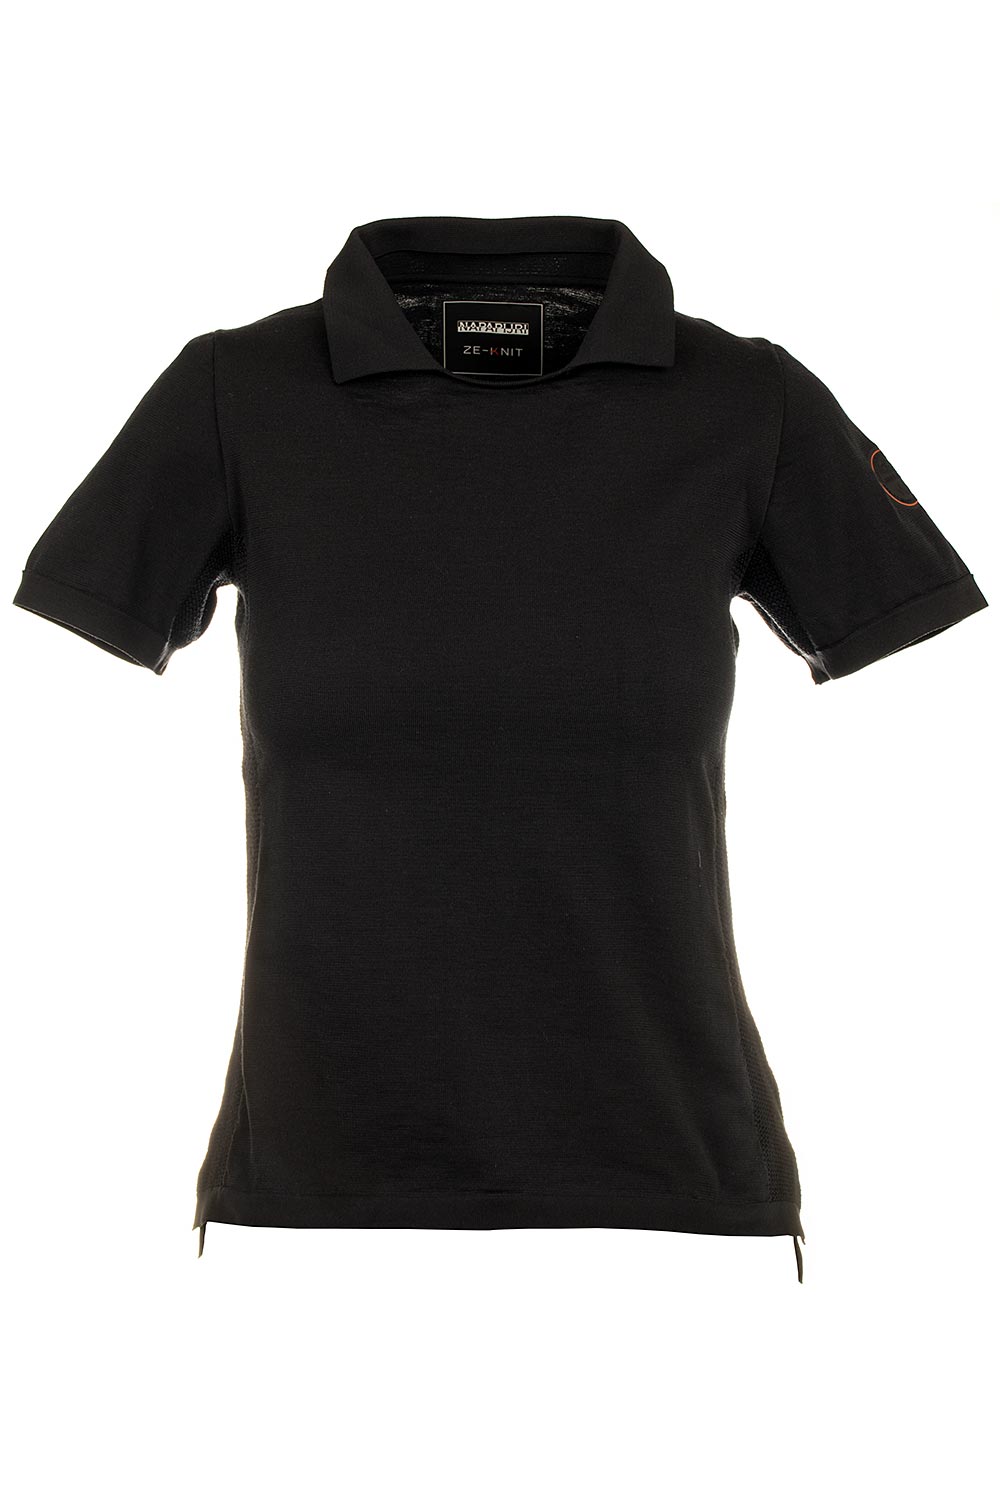 Napapijri dámské sportovní tričko černé Velikost: M